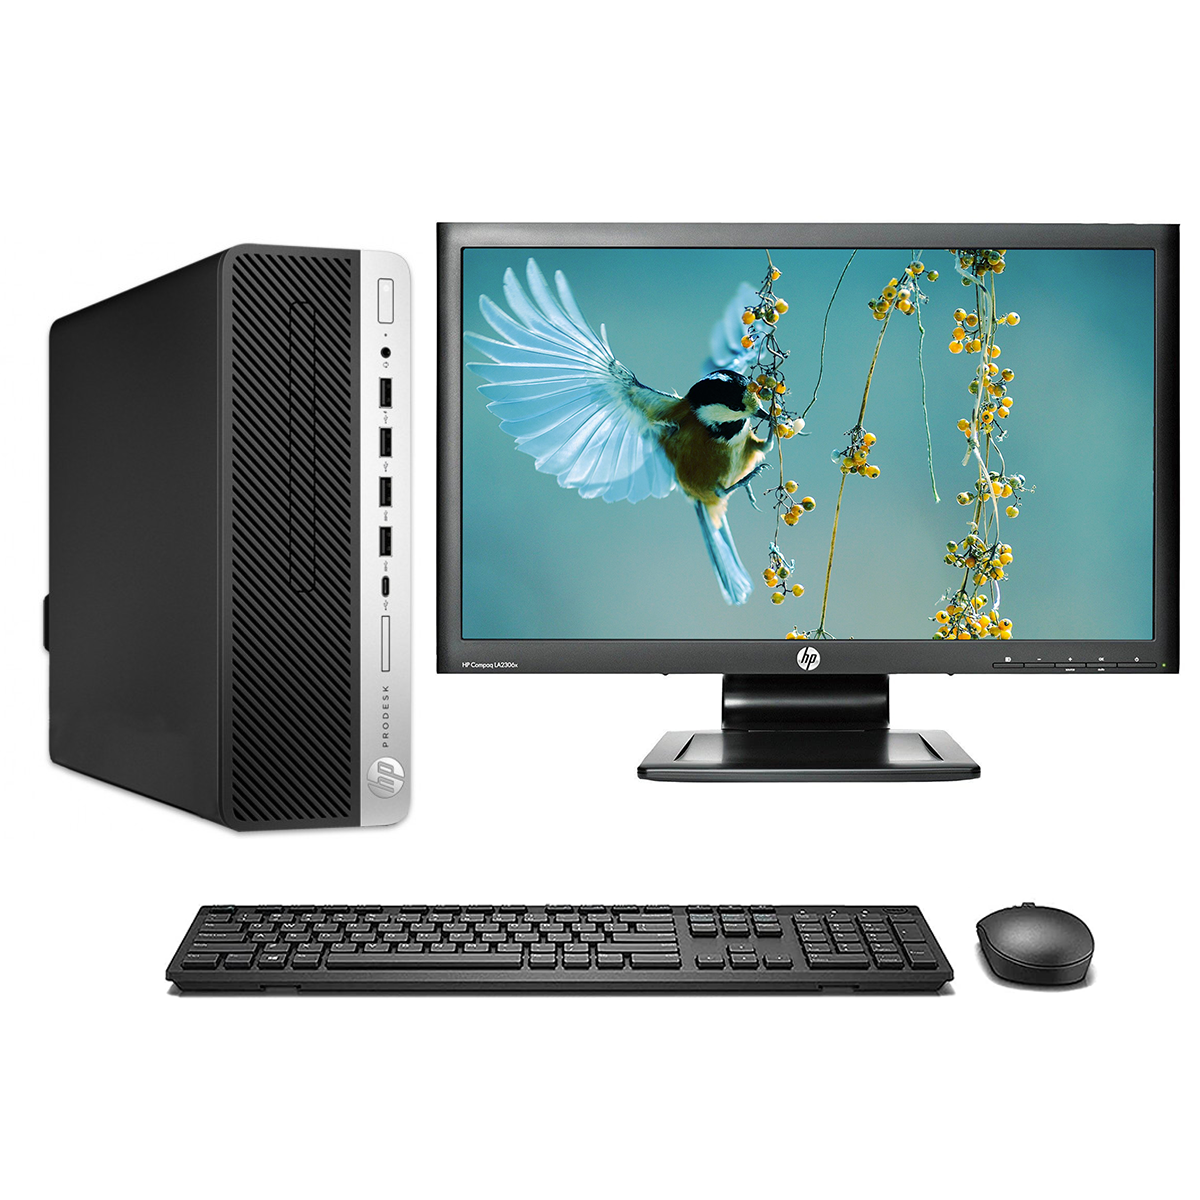 HP ProDesk 600 G3 i5 6ta, 240Gb SSD, 16Gb RAM, Monitor 22